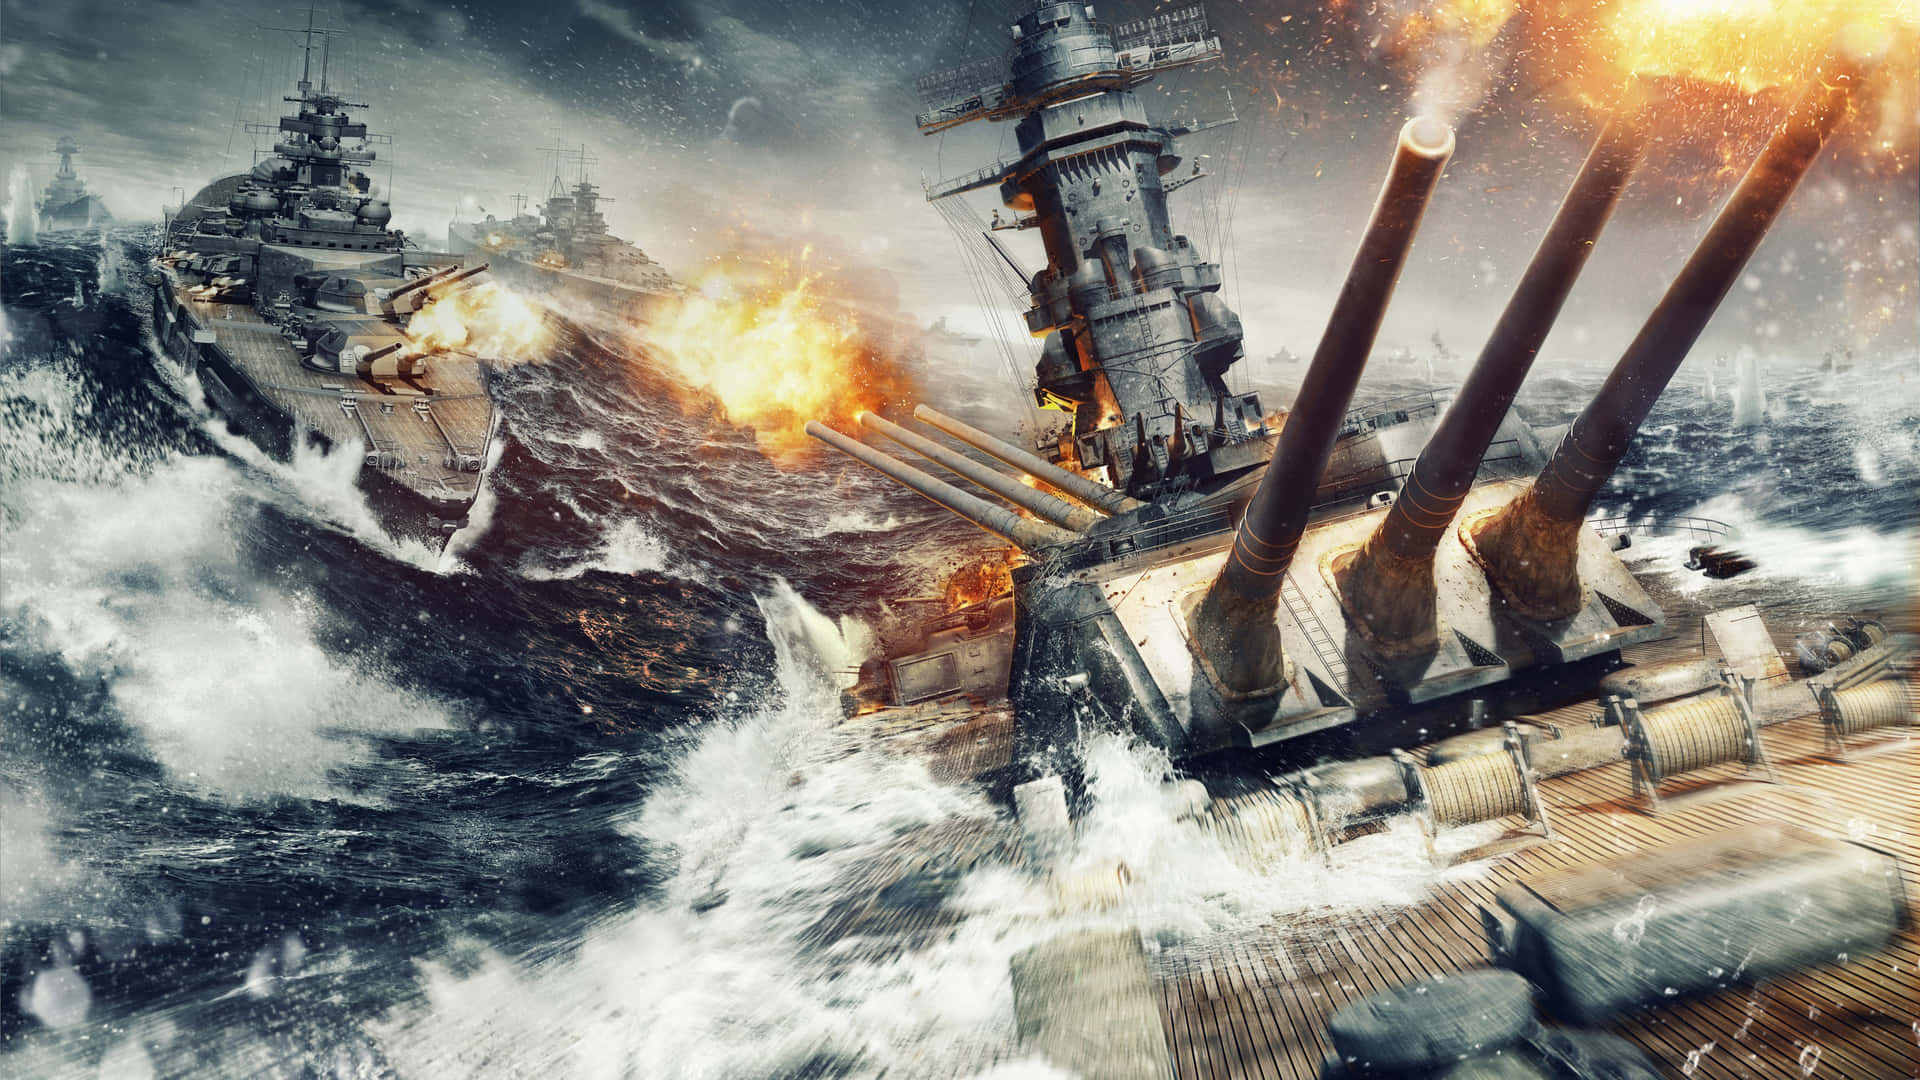 Naval_ Battle_ Artillery_ Fire.jpg Wallpaper